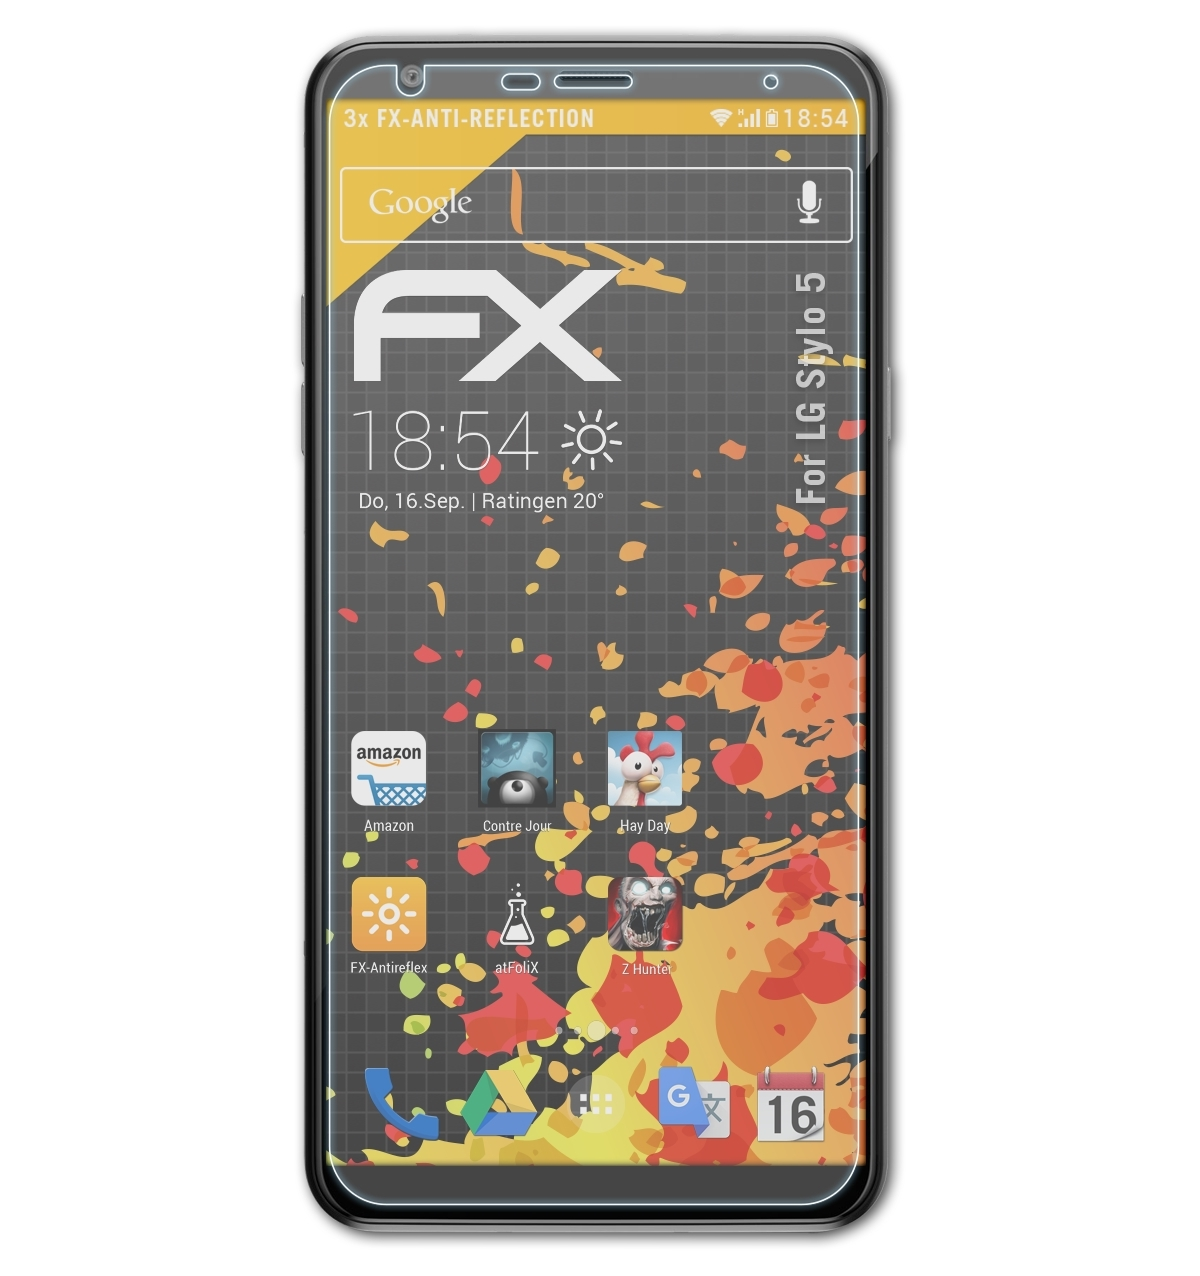 3x Displayschutz(für Stylo 5) FX-Antireflex LG ATFOLIX